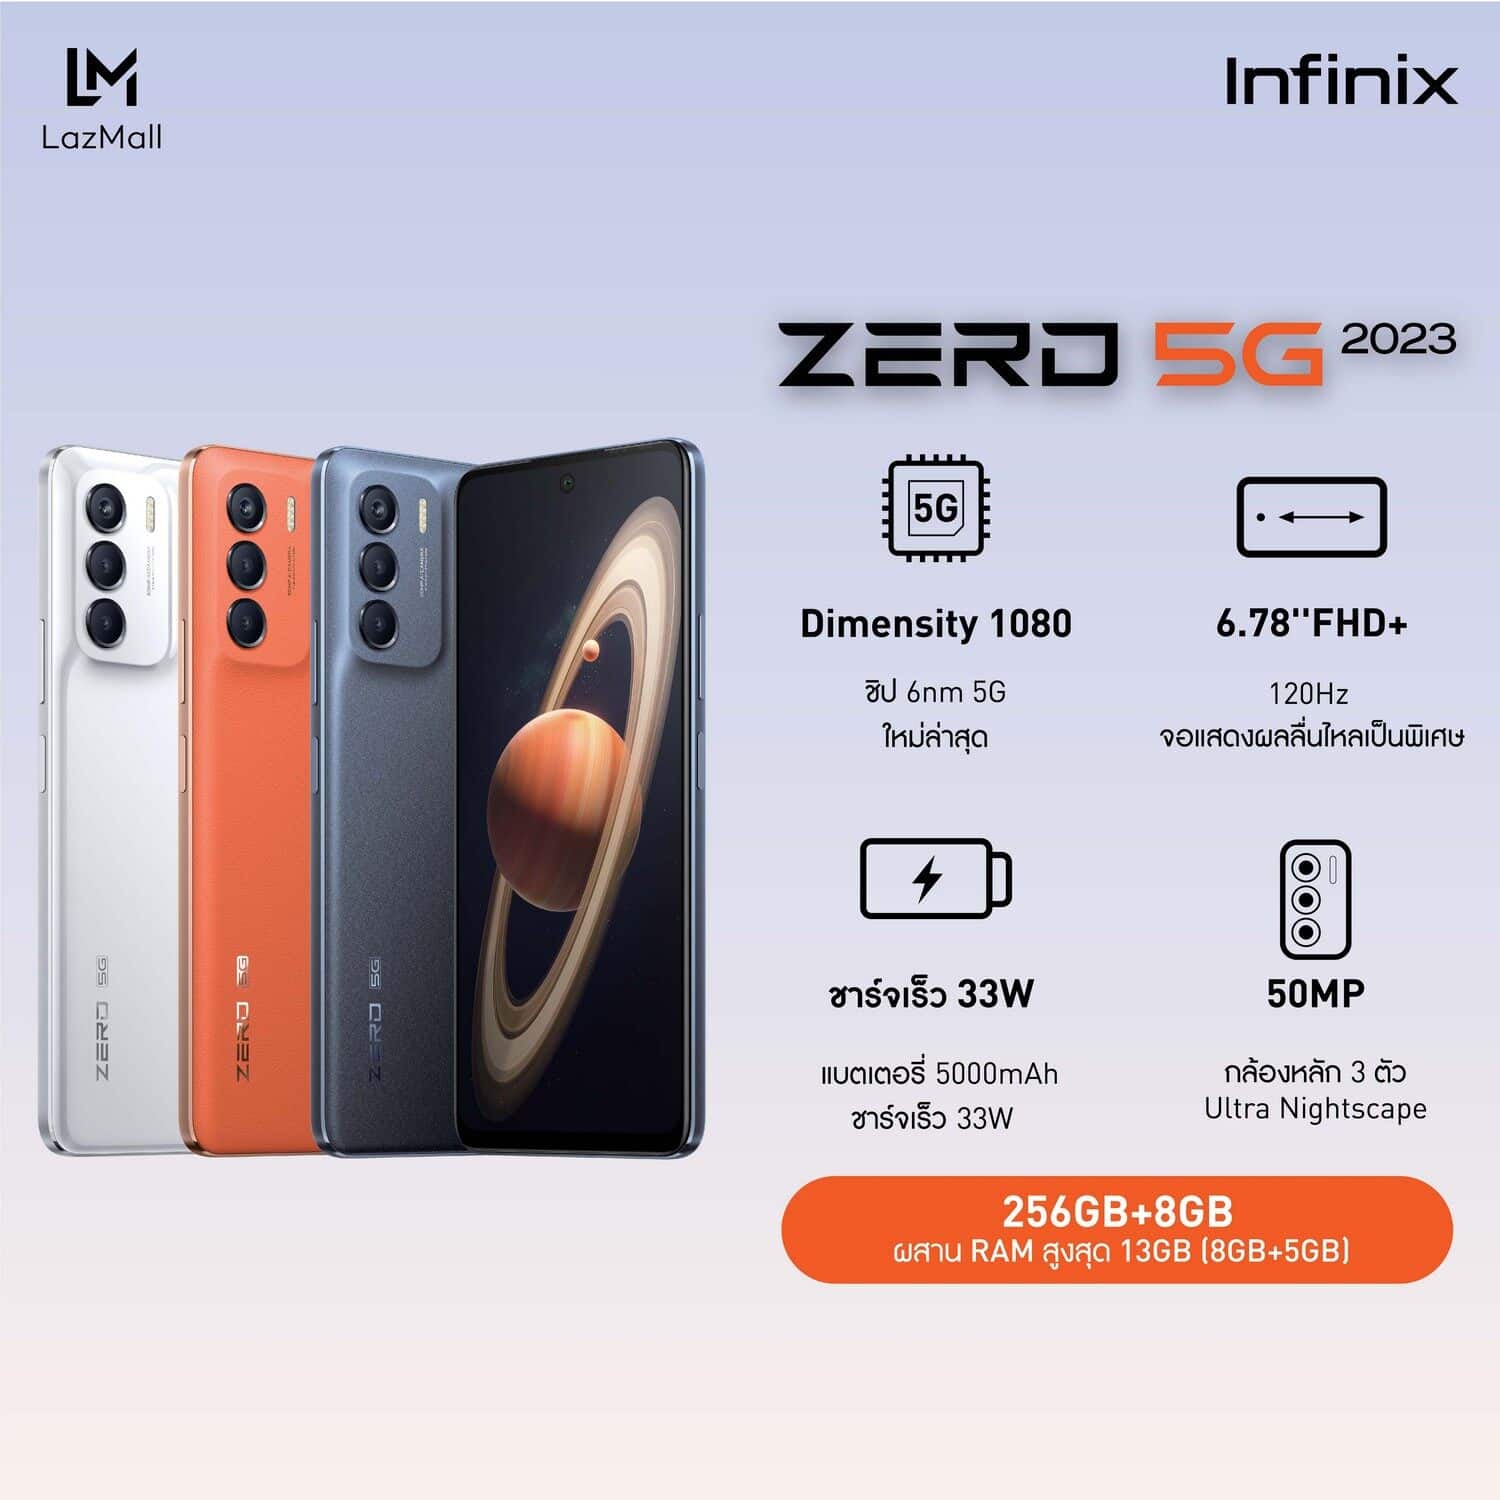 Infinix ZERO 5G 2023 - 0fa998a5504996123b750e5d8be7ccdc - ภาพที่ 3